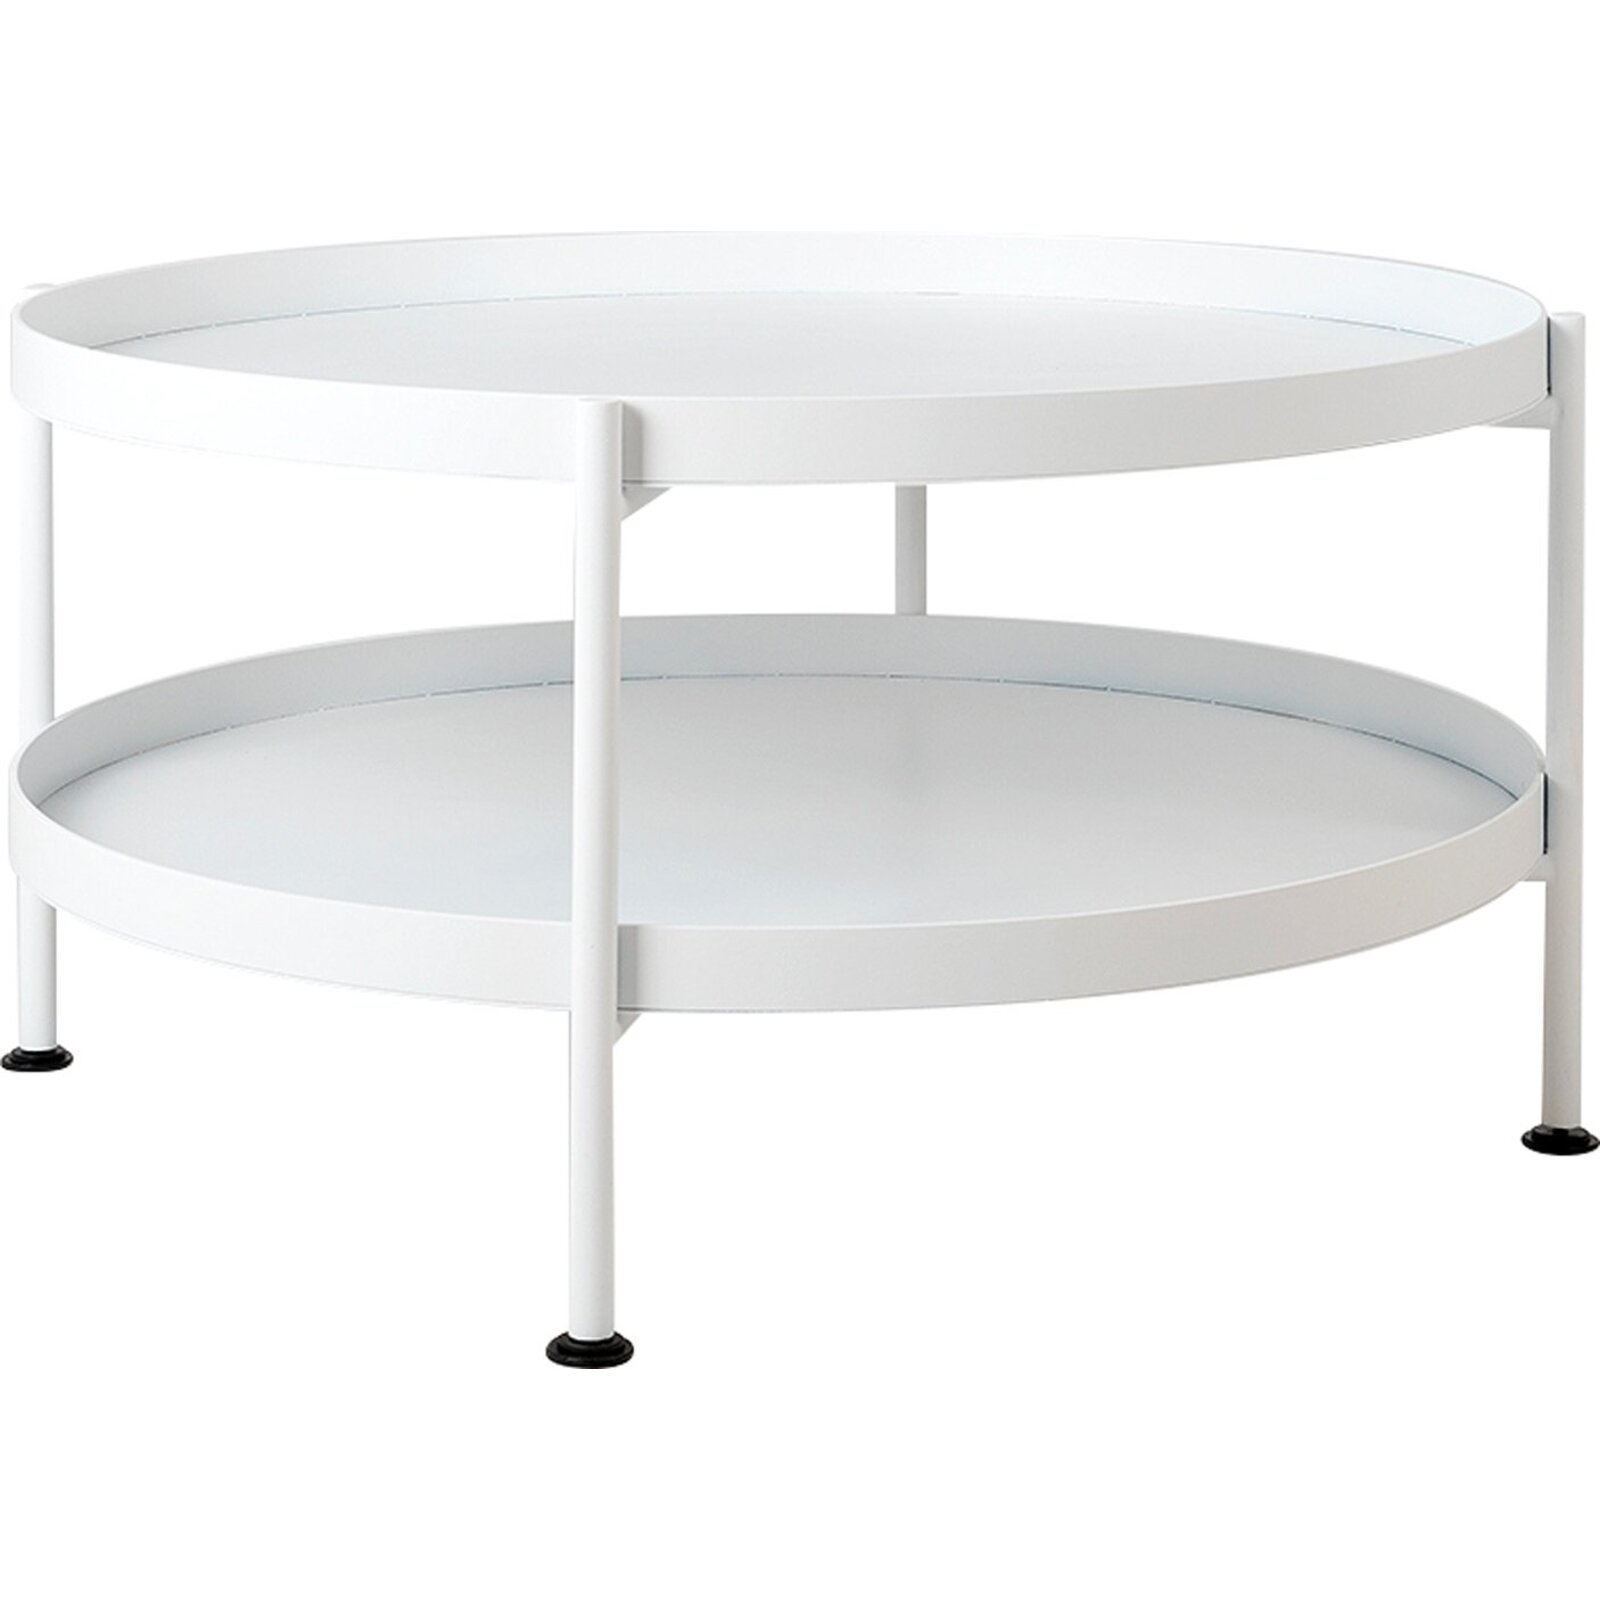 Table basse design en métal blanc d60cm